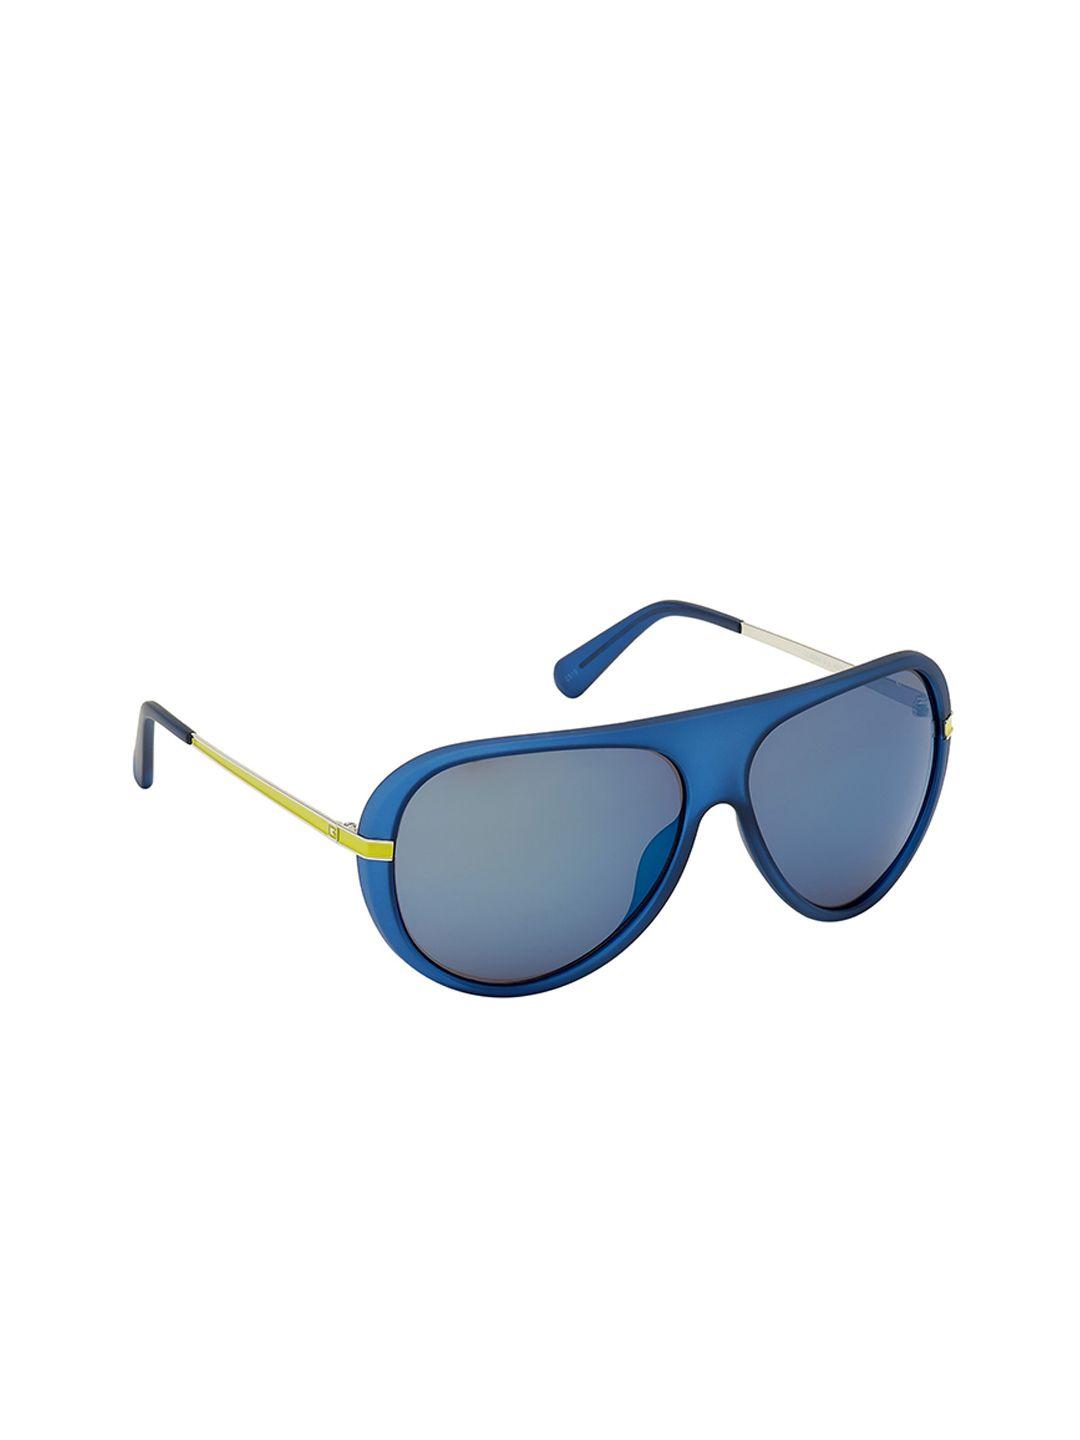 guess-men-aviator-sunglasses-gu6964-61-91x